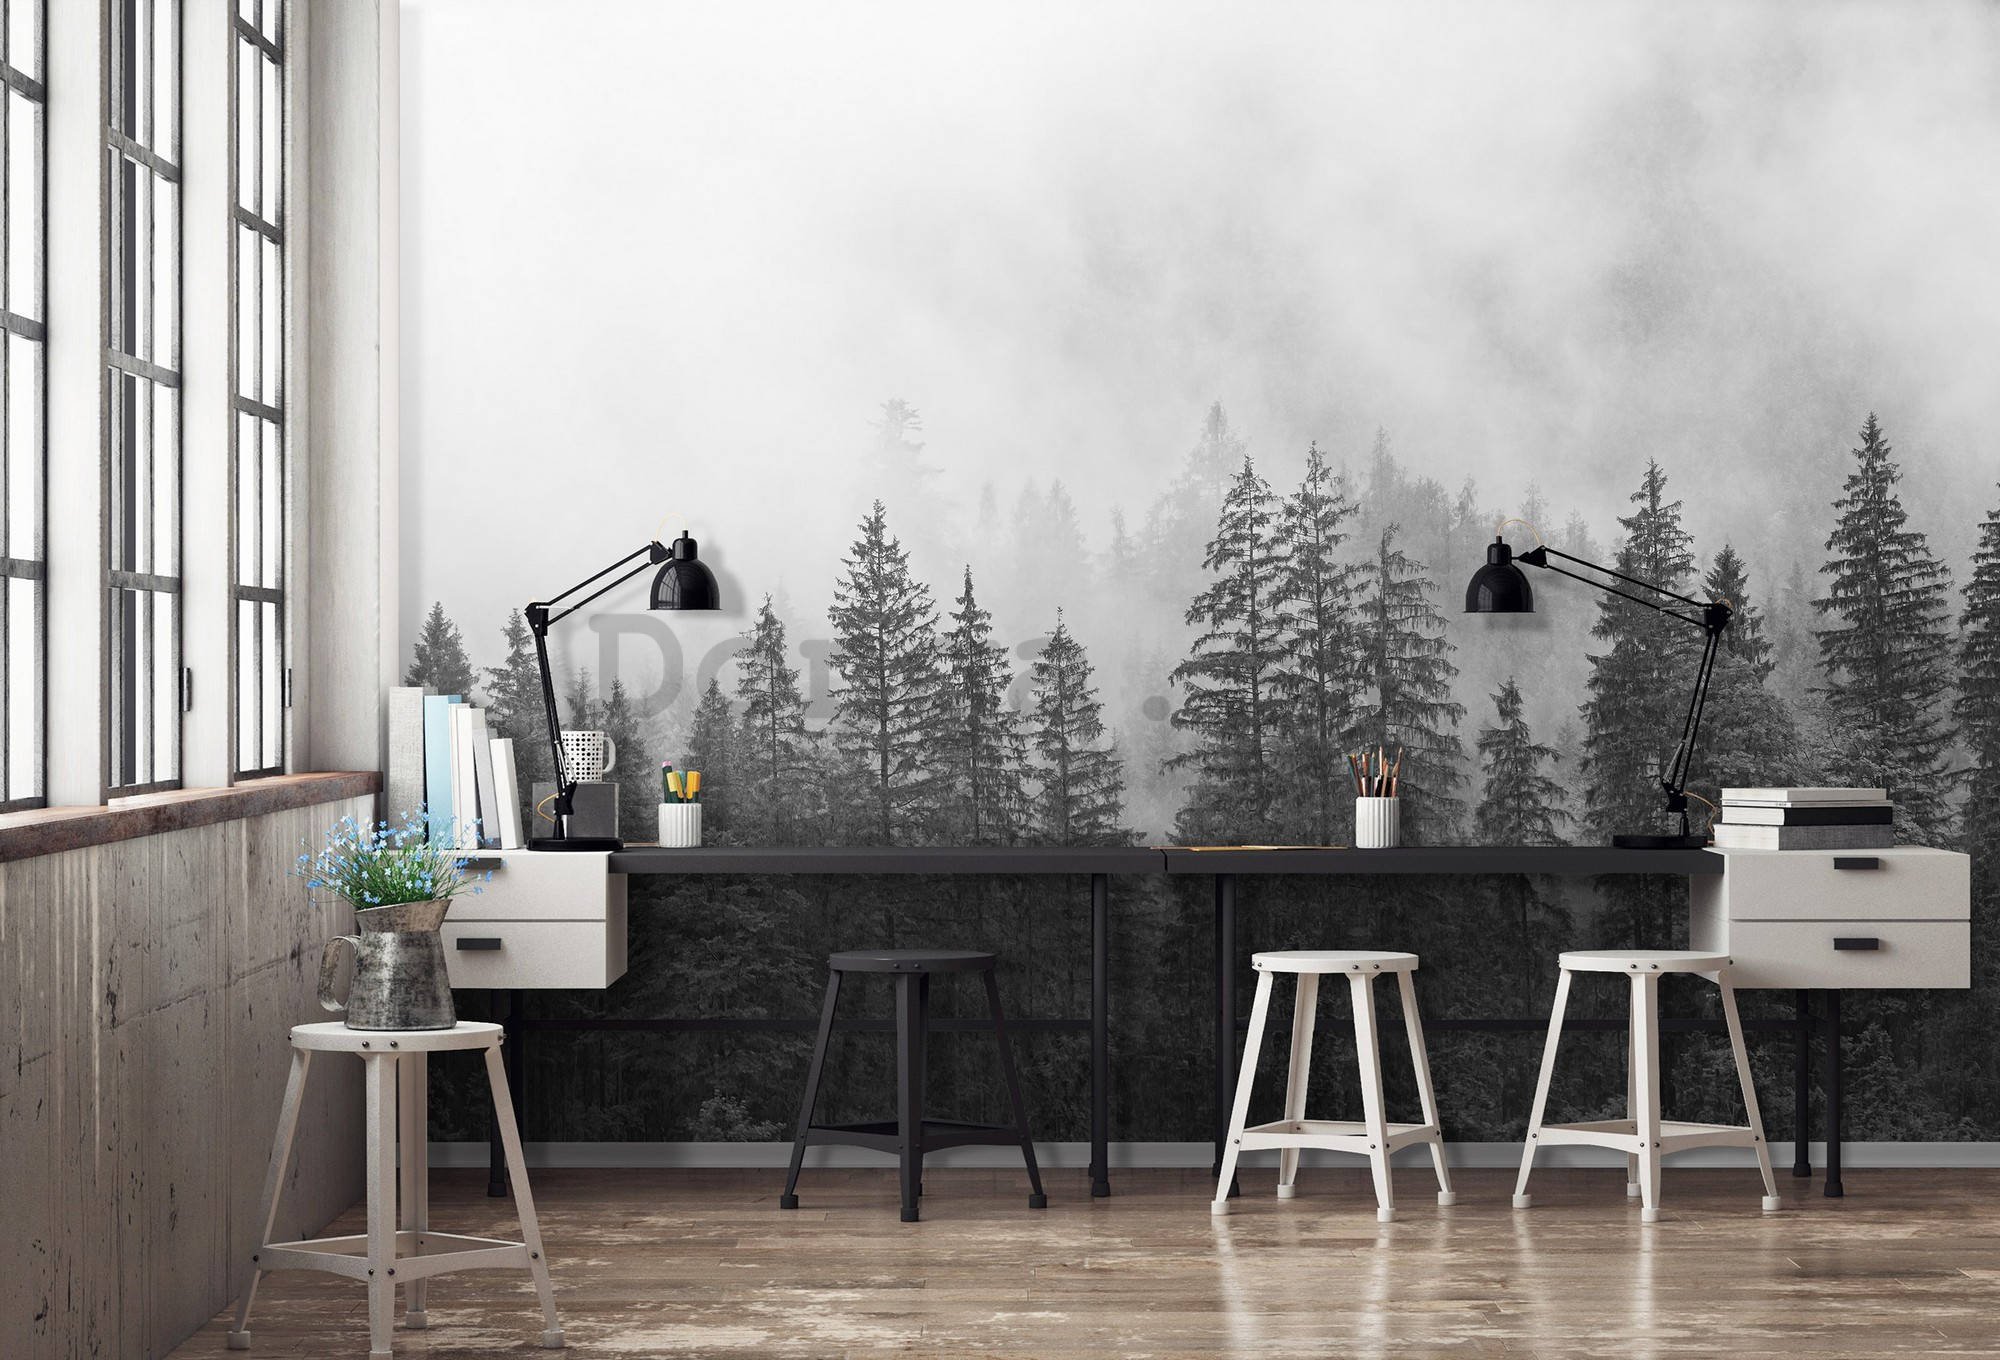 Fototapeta vliesová: Mlha nad černobílým lesem - 416x254 cm